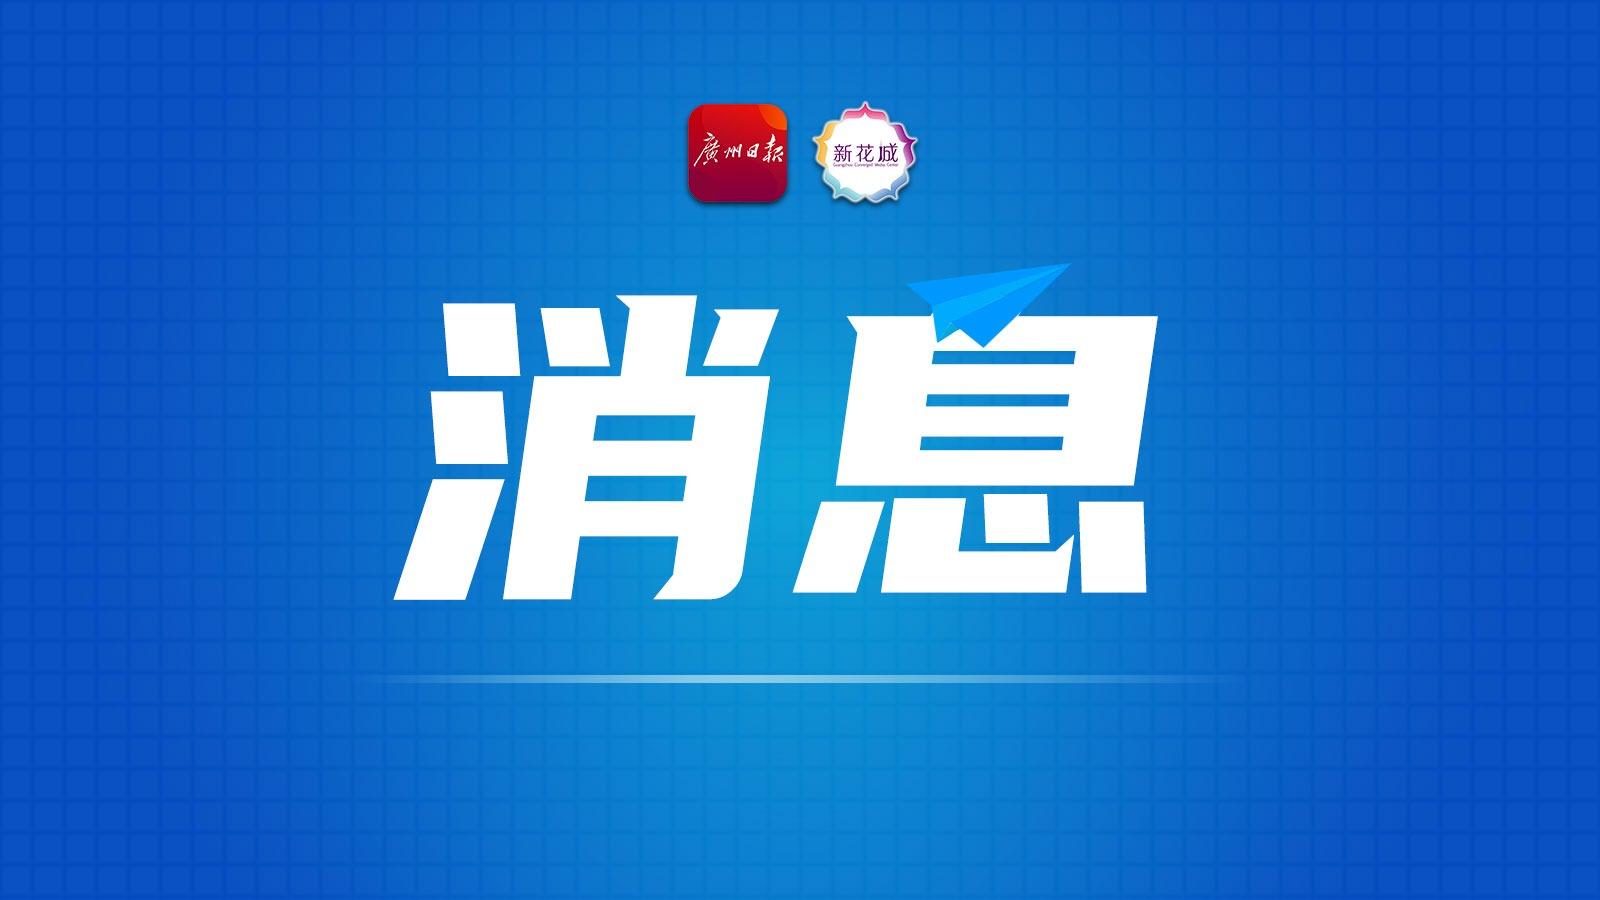 广州荔湾发布-信息时报微社区e家通融媒实验室揭牌